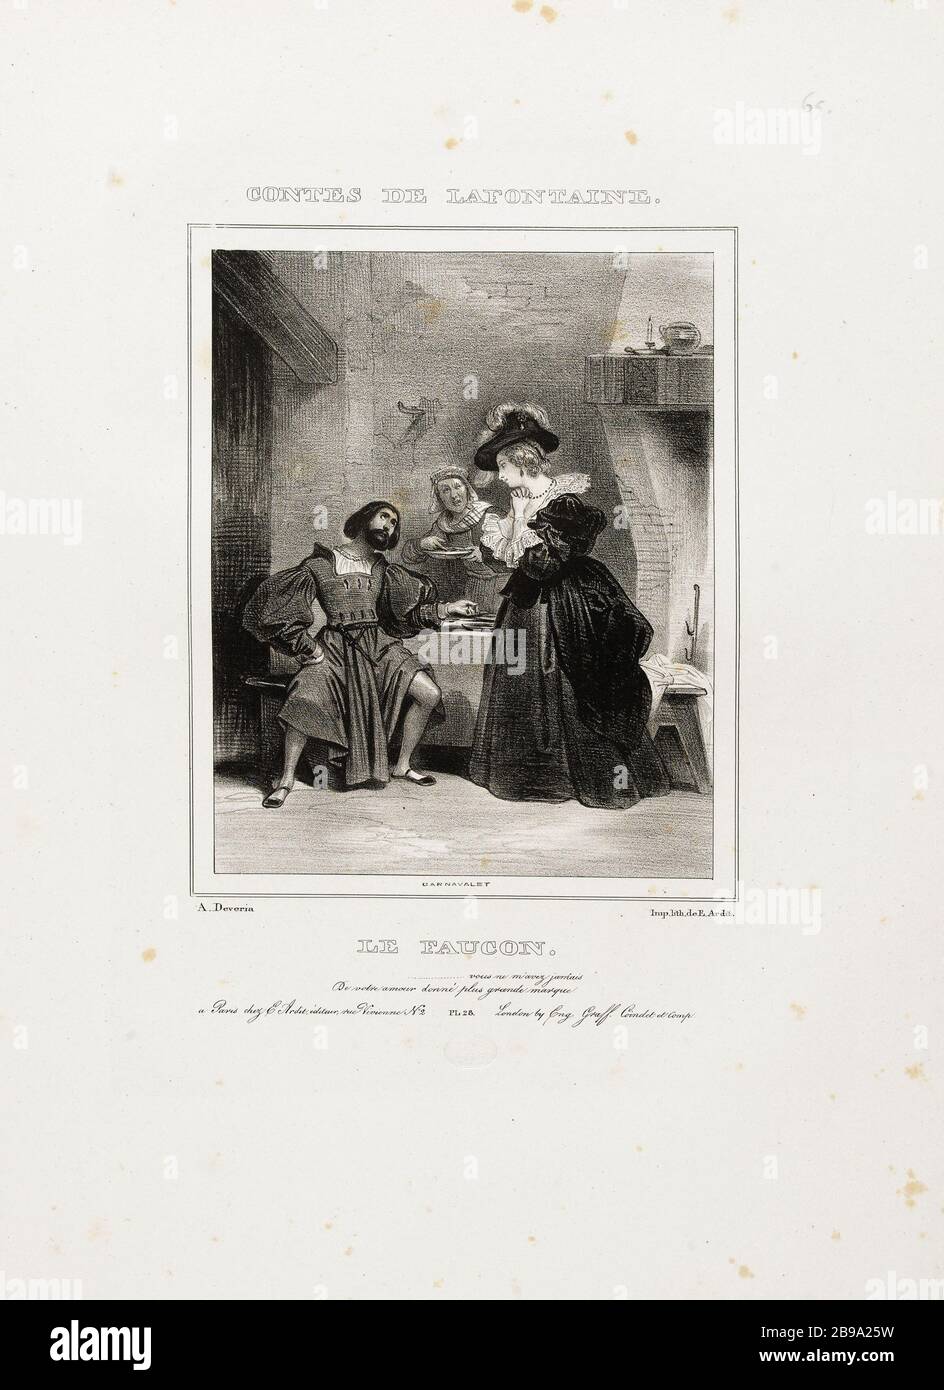 Album Tales of Jean de La Fontaine: the falcon. Achille Devéria (1800-1857) et E. Ardit. Album des Contes de Jean de La Fontaine : le faucon. Lithographie, 1830. Paris, musée Carnavalet. Stock Photo